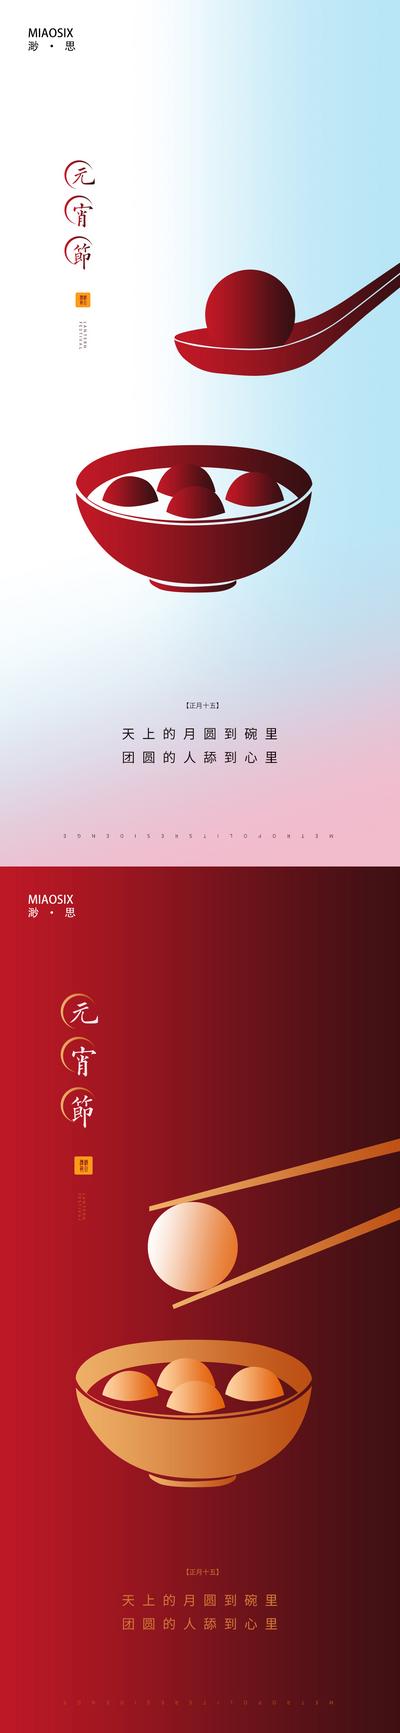 南门网 海报 房地产 中国传统节日 元宵节 系列